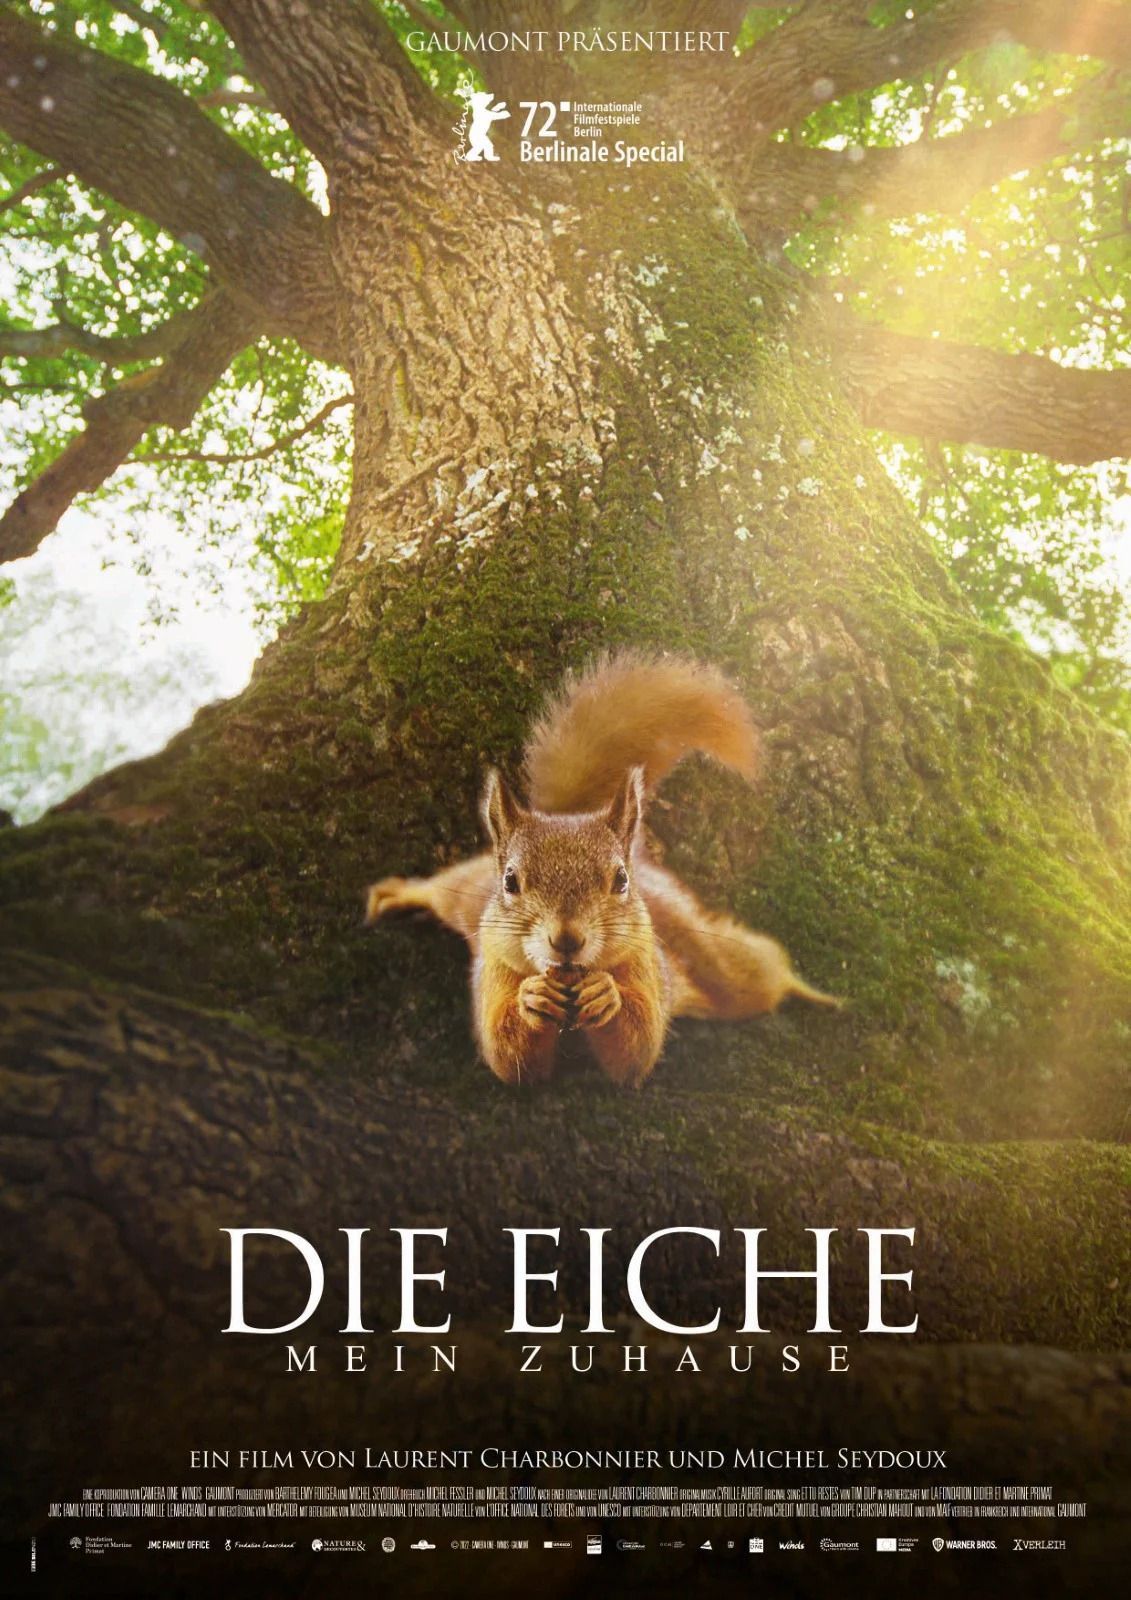 Aus der Reihe VHS-Kino "Die Eiche- Mein Zuhause" am 27.11.24